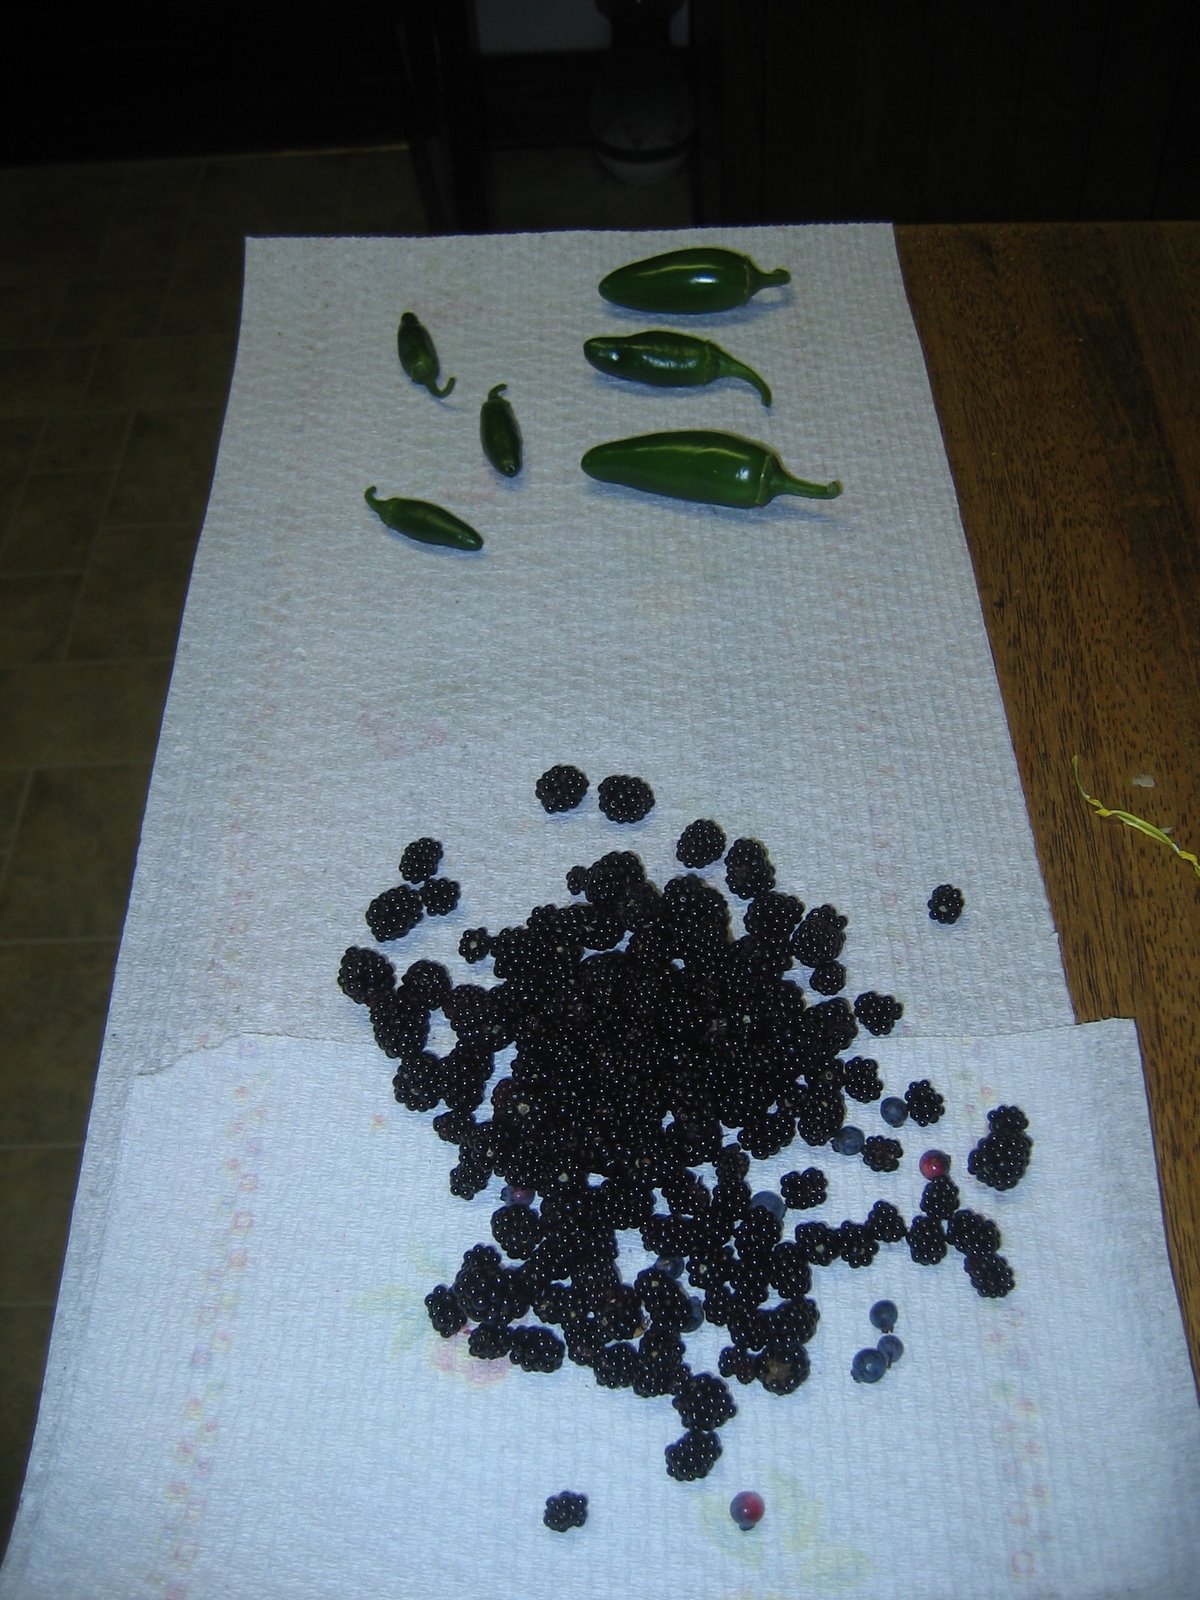 First harvest: jalapenos, blackberries, blueberries